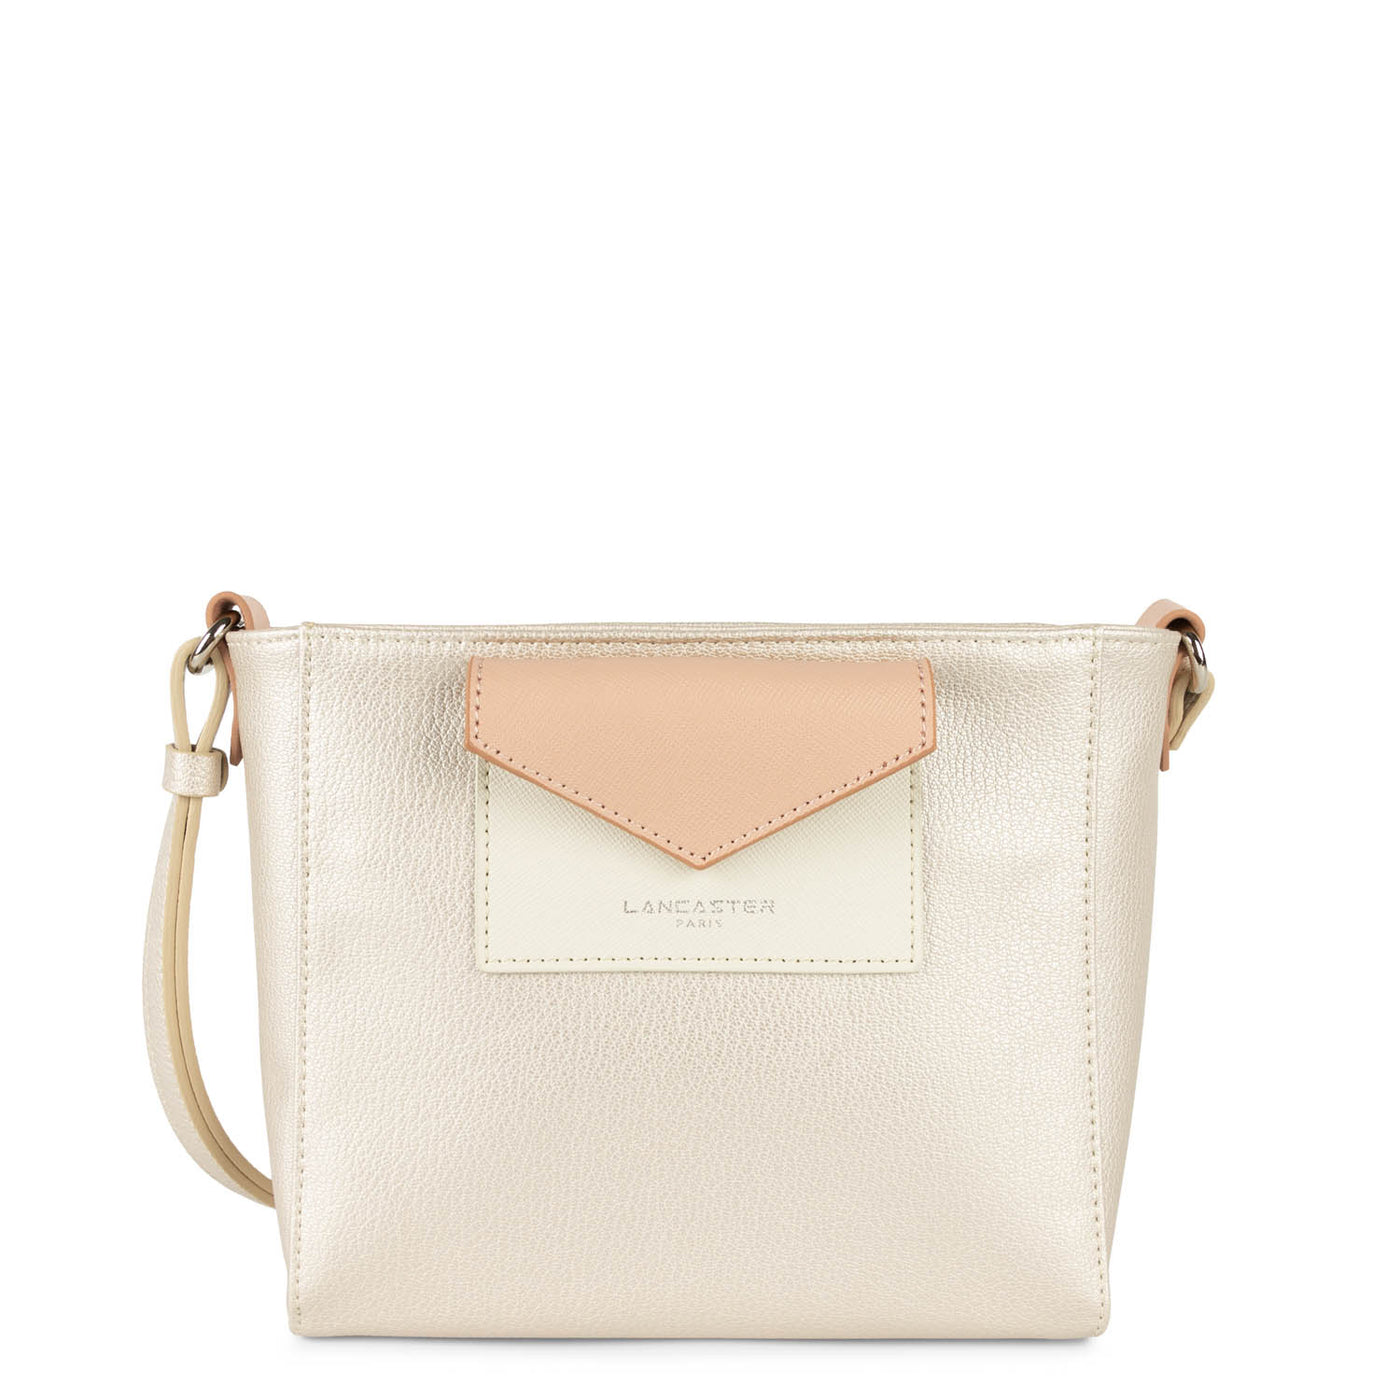 crossbody bag - maya #couleur_nacre-blanc-poudre